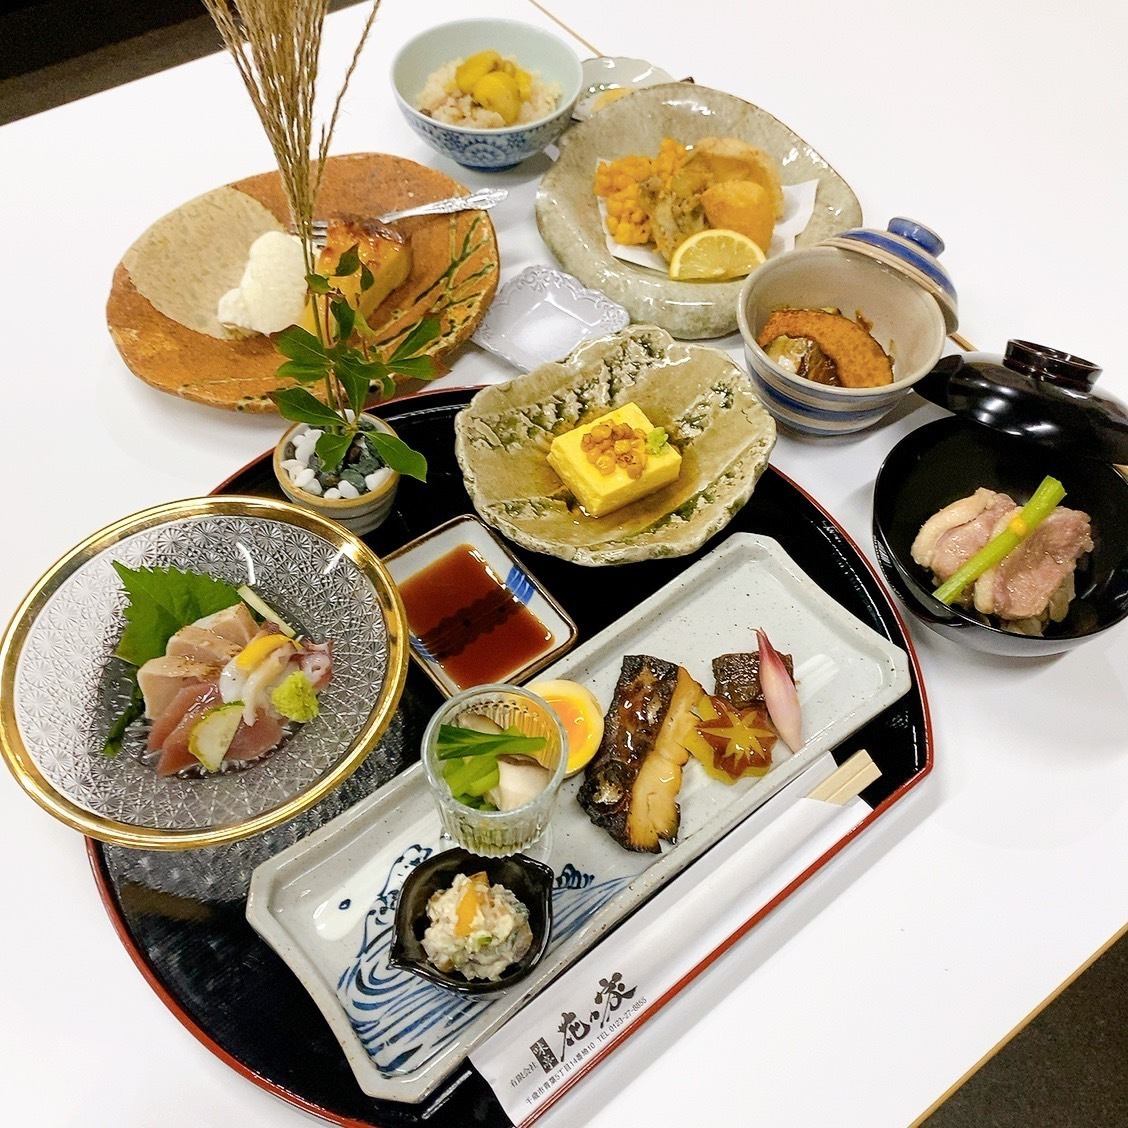 享受您想要的所有日本料理，包括海鮮、肉類和油炸食品。